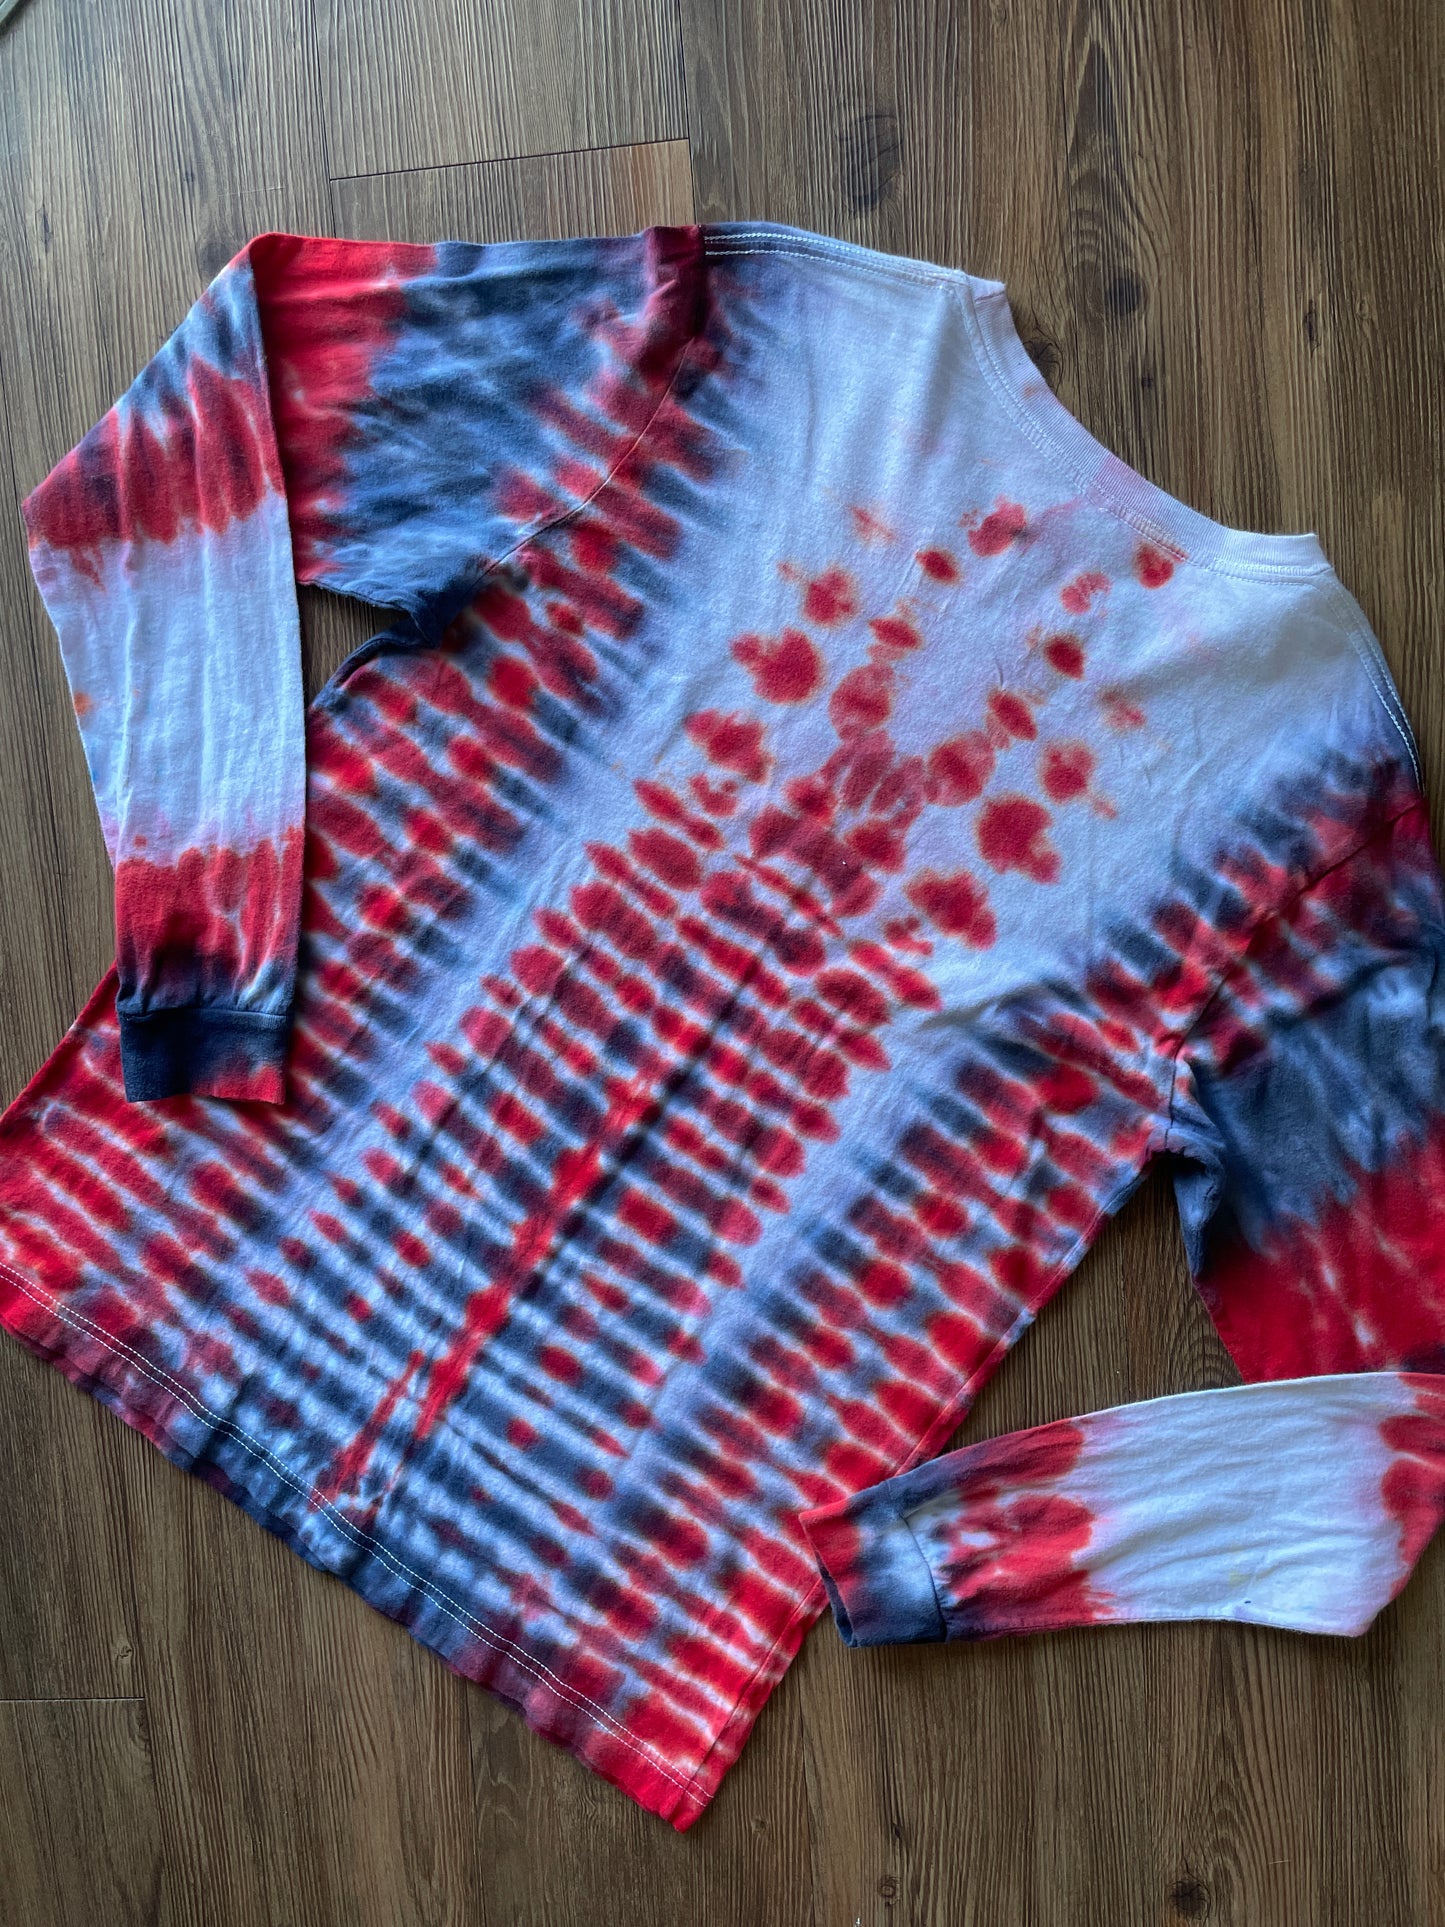 Large Men’s Utah Utes Handmade Tie Dye T-Shirt | Red and Black U of U Pleated Tie Dye Long  Sleeve